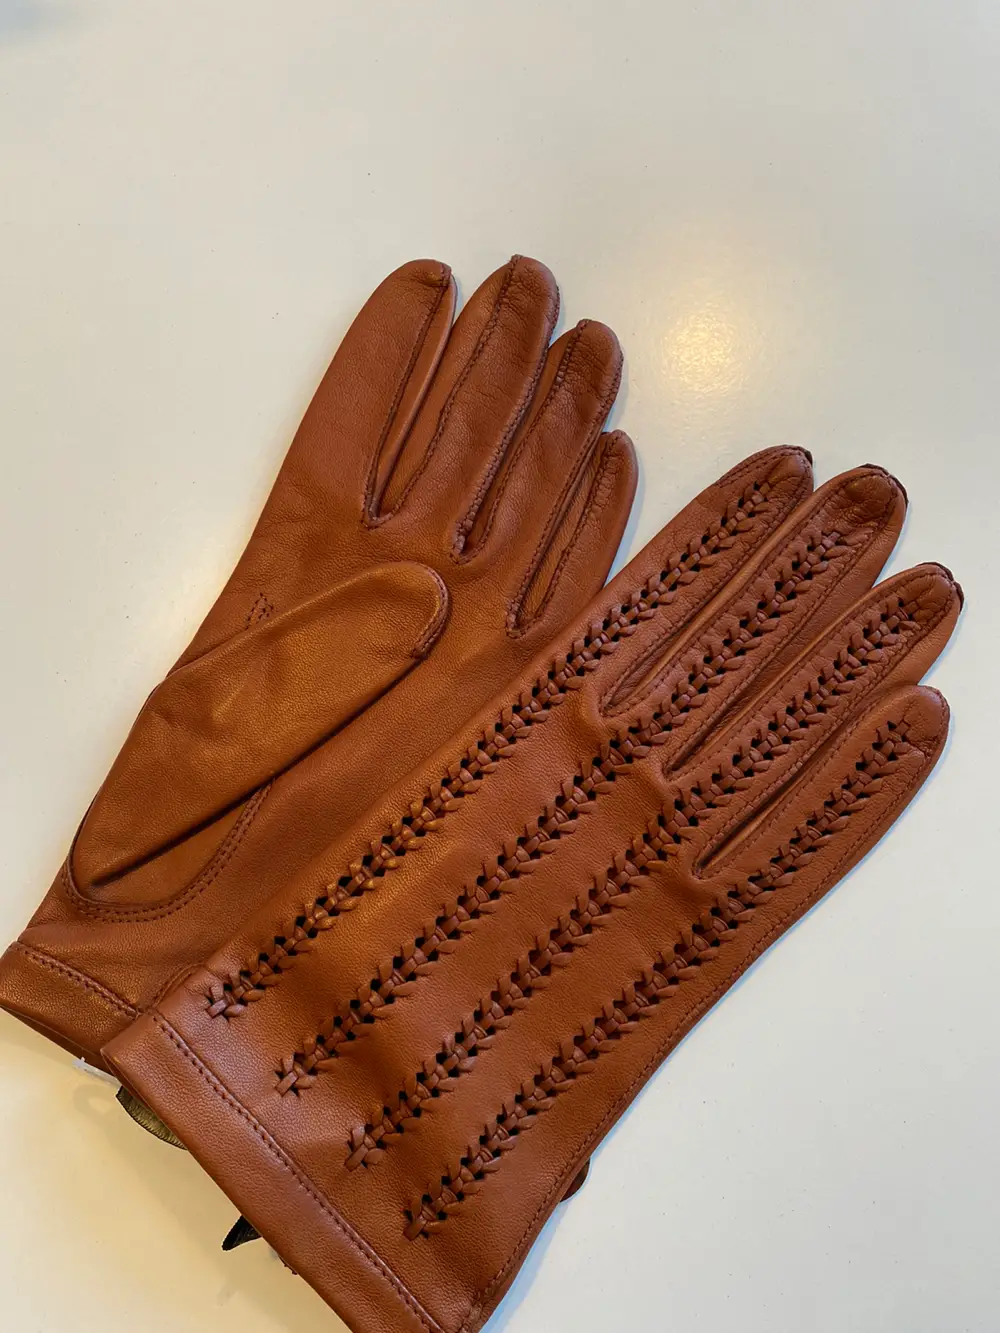 Køb Randers Handsker Handsker af Stine-Helene på Reshopper · secondhand til børn, og bolig